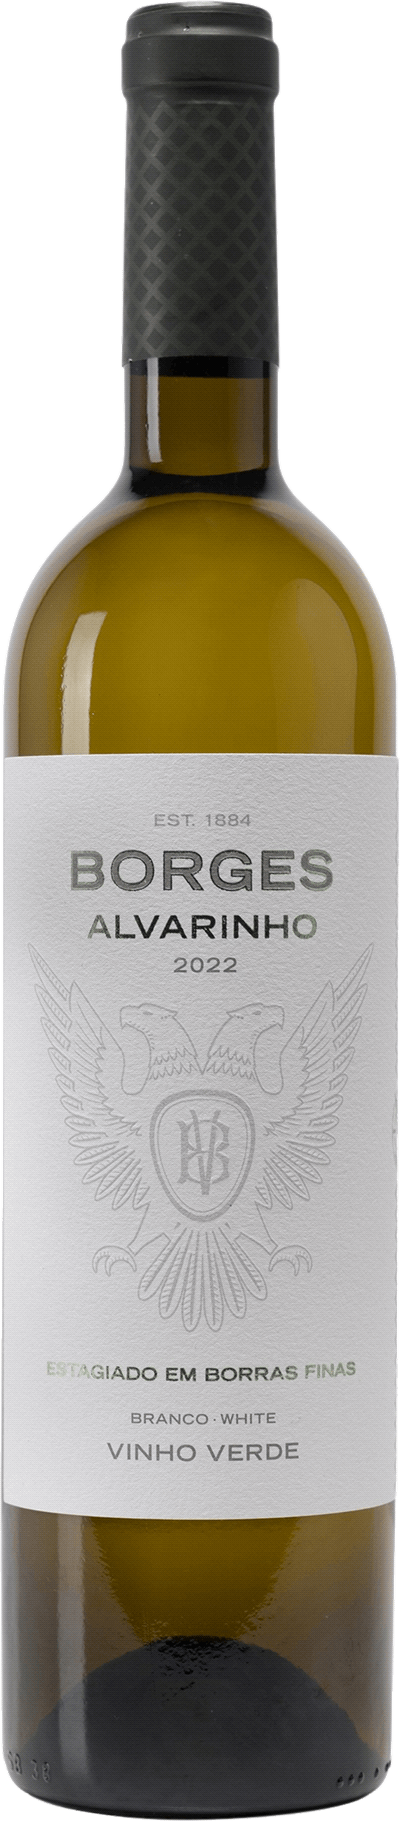 Borges Alvarinho Vinhos Borges